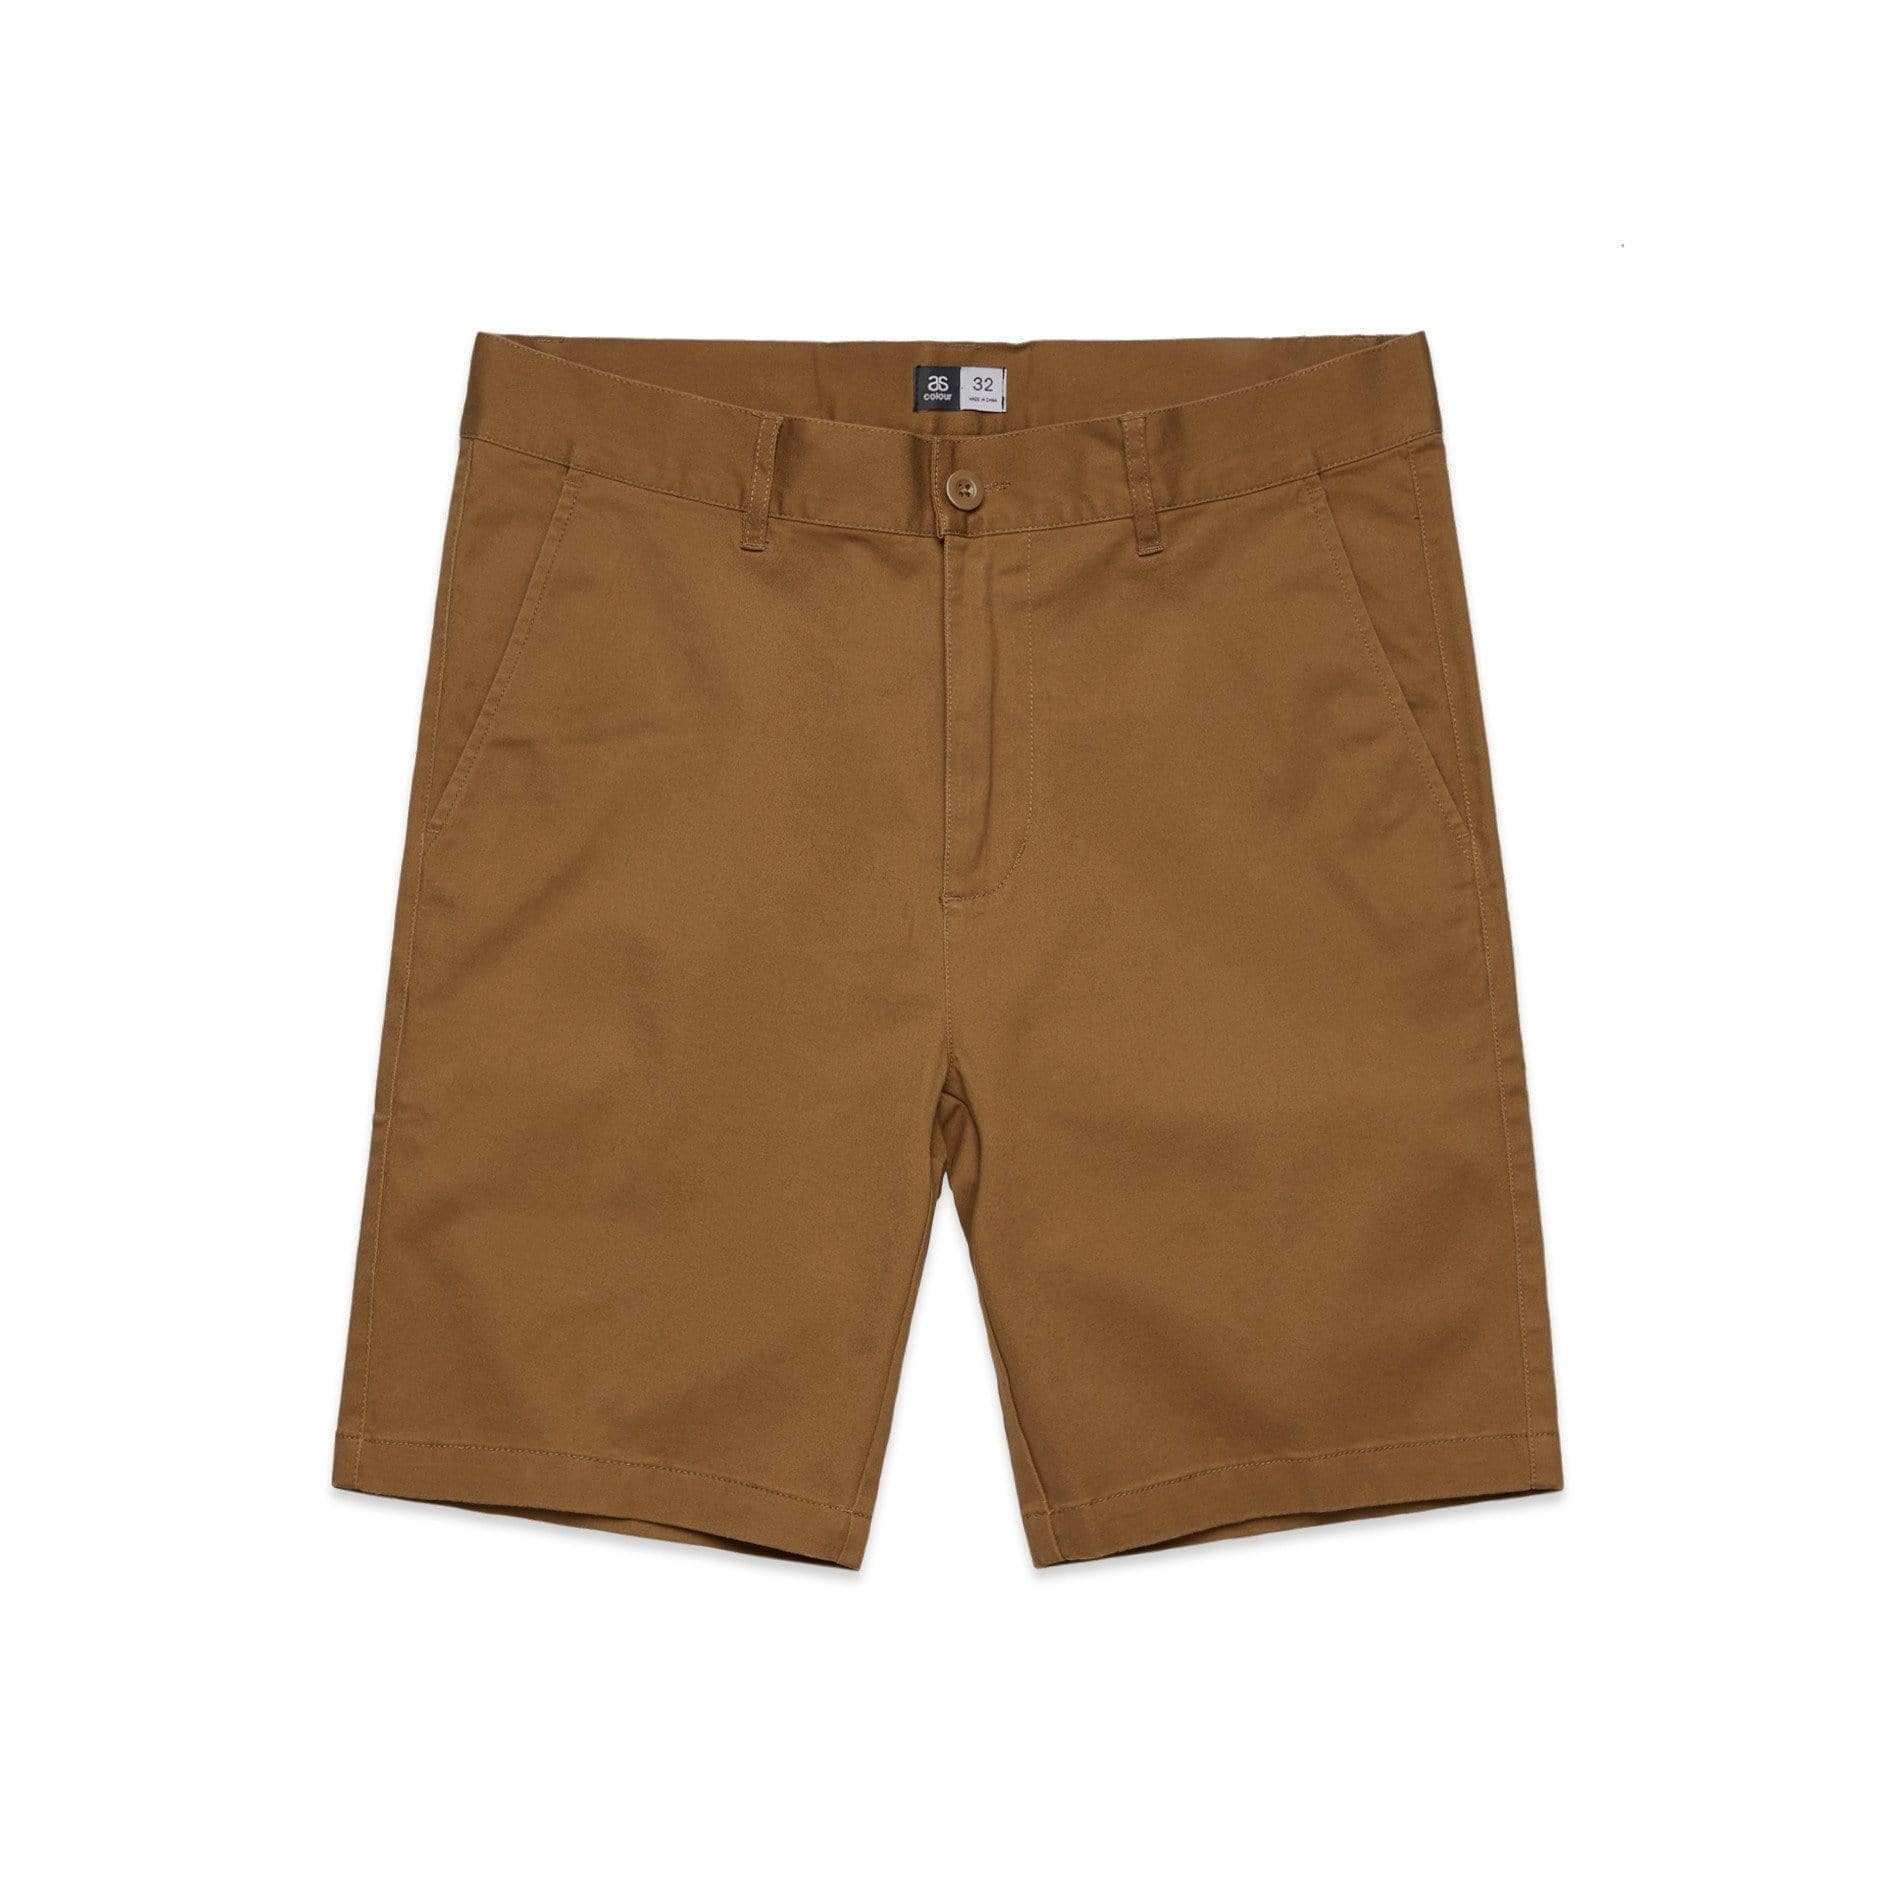 As Colour Active Wear TOBACCO / 28 As Colour Men's plain shorts 5902